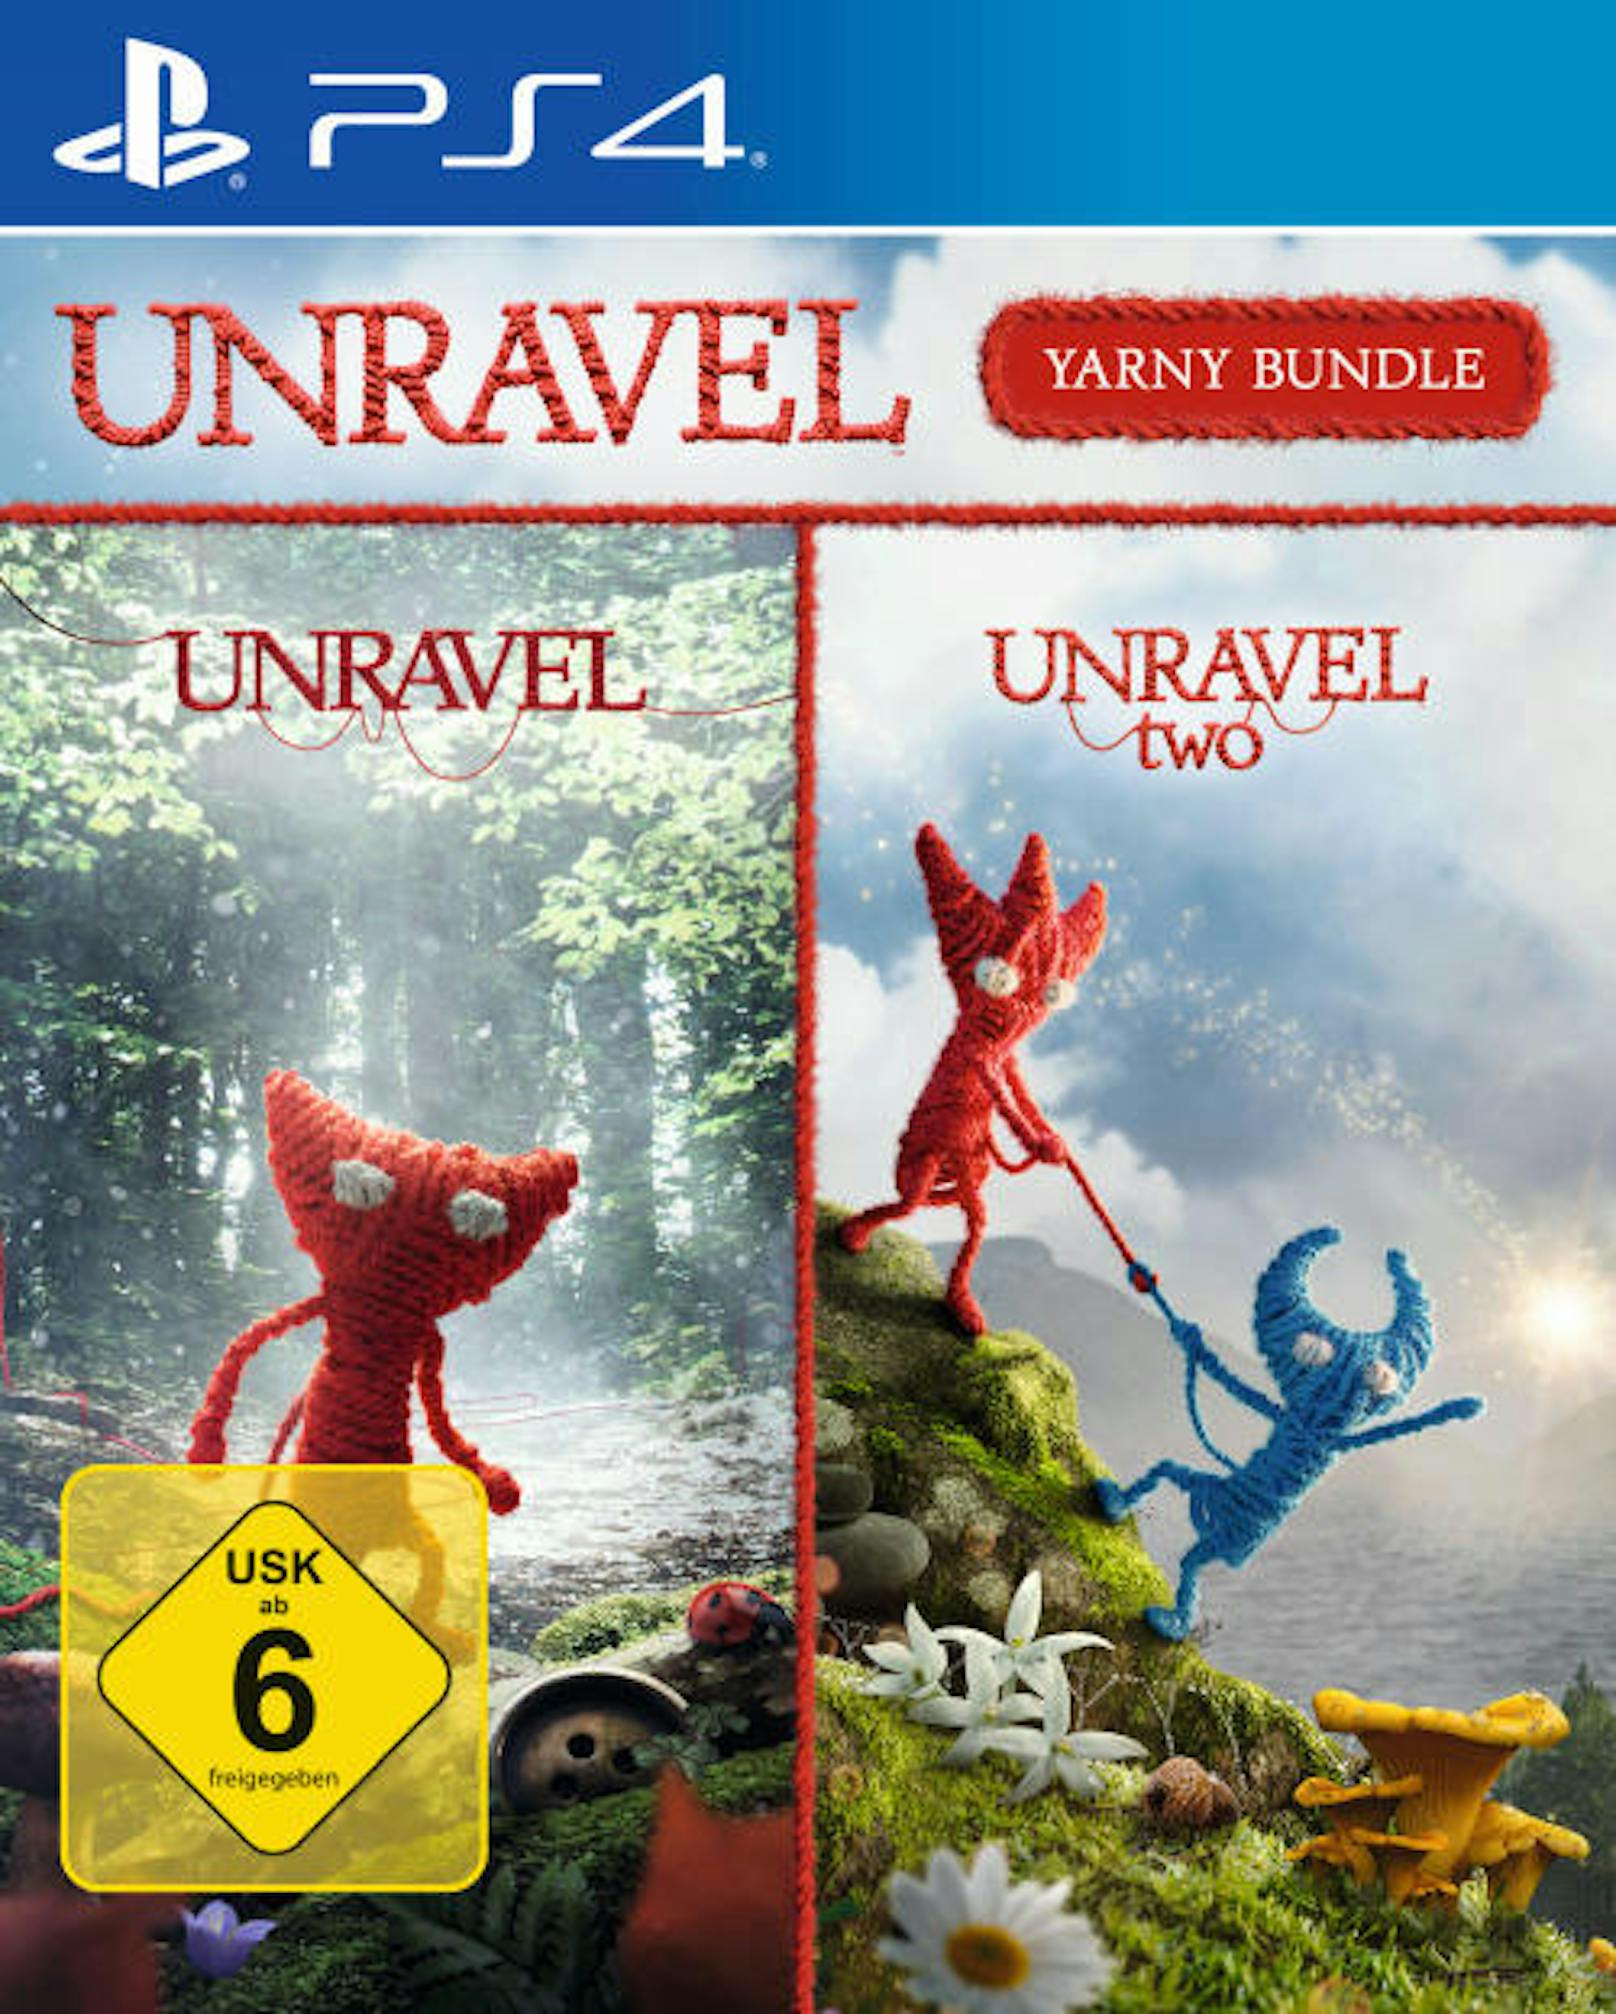 Coldwood Interactive und Electronic Arts geben bekannt, dass das Unravel Yarny Bundle am 7. Dezember für PlayStation 4 und Xbox One veröffentlicht wird. Darin sind die beiden Puzzle-Plattform-Abenteuer Unravel und Unravel Two enthalten, in denen die Spieler die liebenswerte Kreatur Yarny durch einzigartige Naturumgebungen begleiten. Bei Unravel handelt es sich um einen Rätsel-Plattformer mit der winzigen Garnfigur Yarny in der Hauptrolle. Yarny besteht aus einem einzigen Garnfaden, der sich während seiner Reise immer weiter entrollt und mit dessen Hilfe er mit seiner Umgebung interagieren kann.